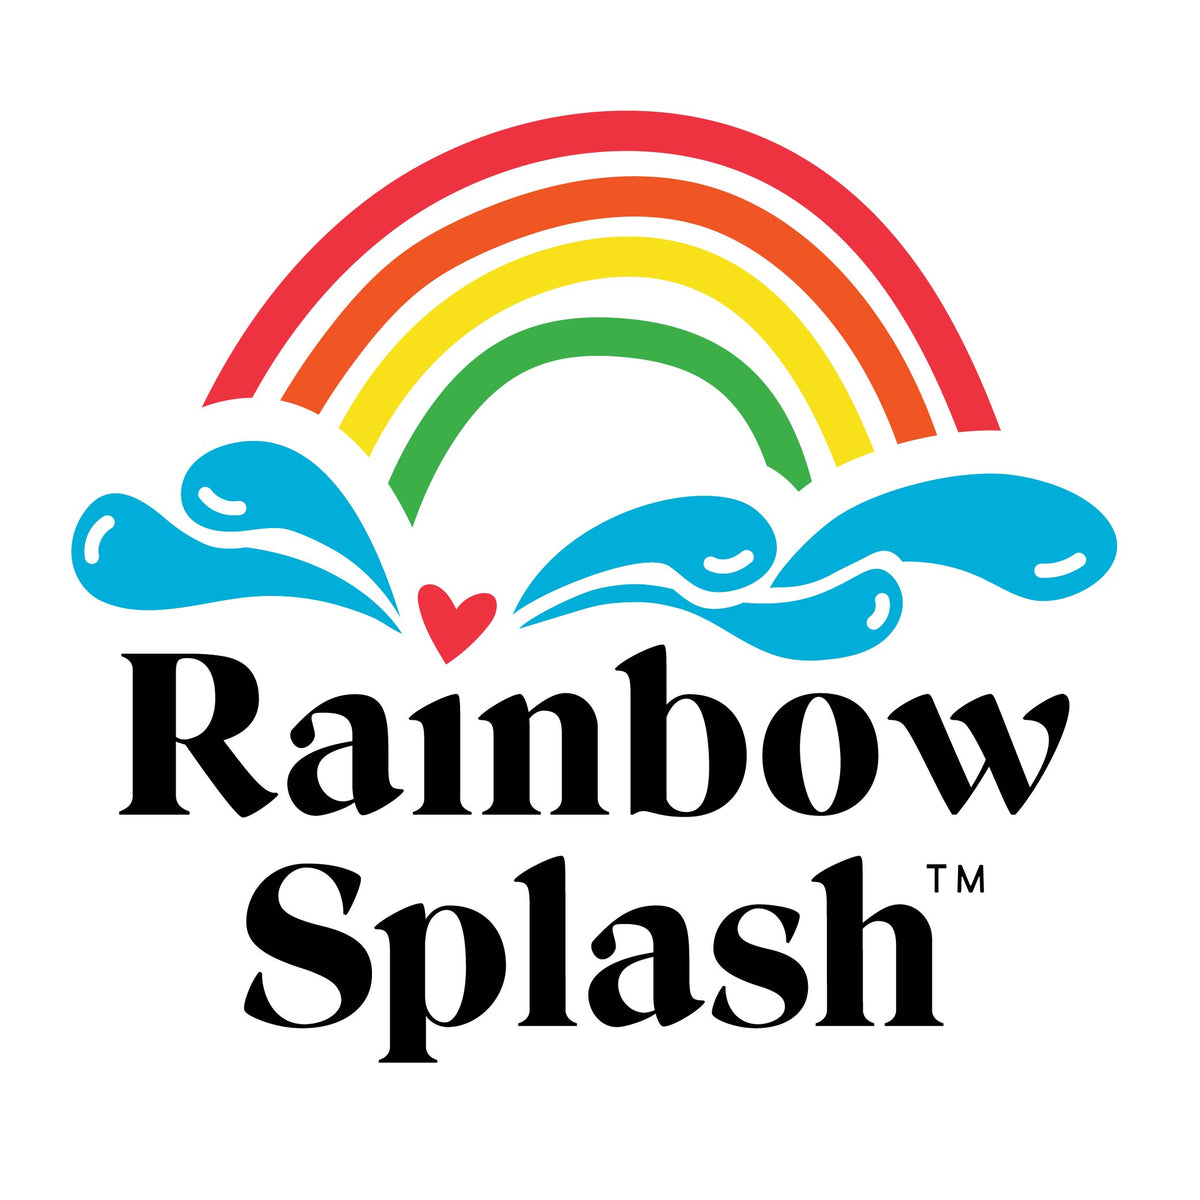 Rainbow Splash Sparkly Hearts Gem Sticker Assortment rsg3